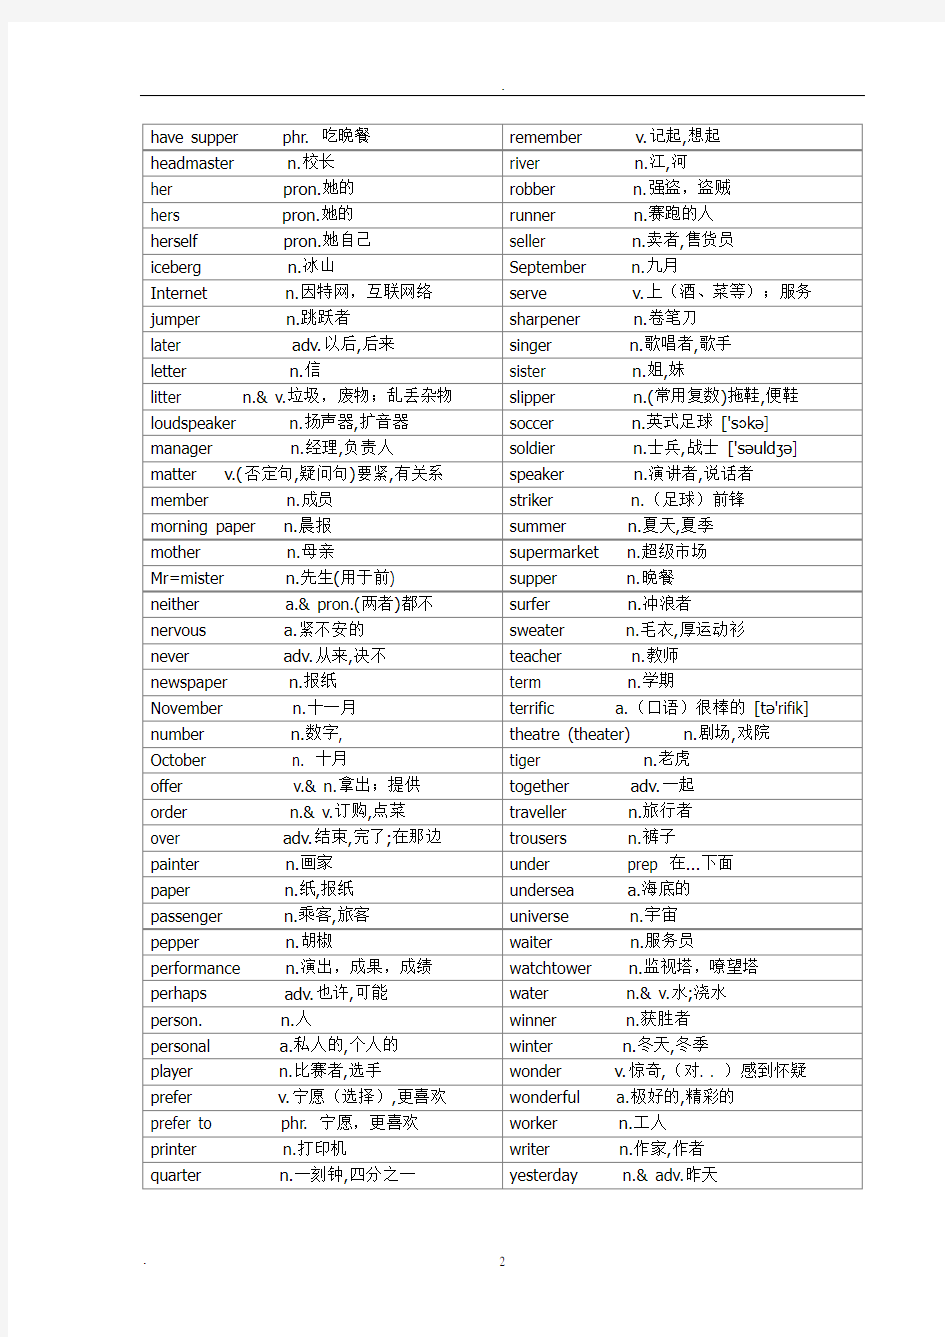 初中英语2000核心词汇(自然拼读法分类)